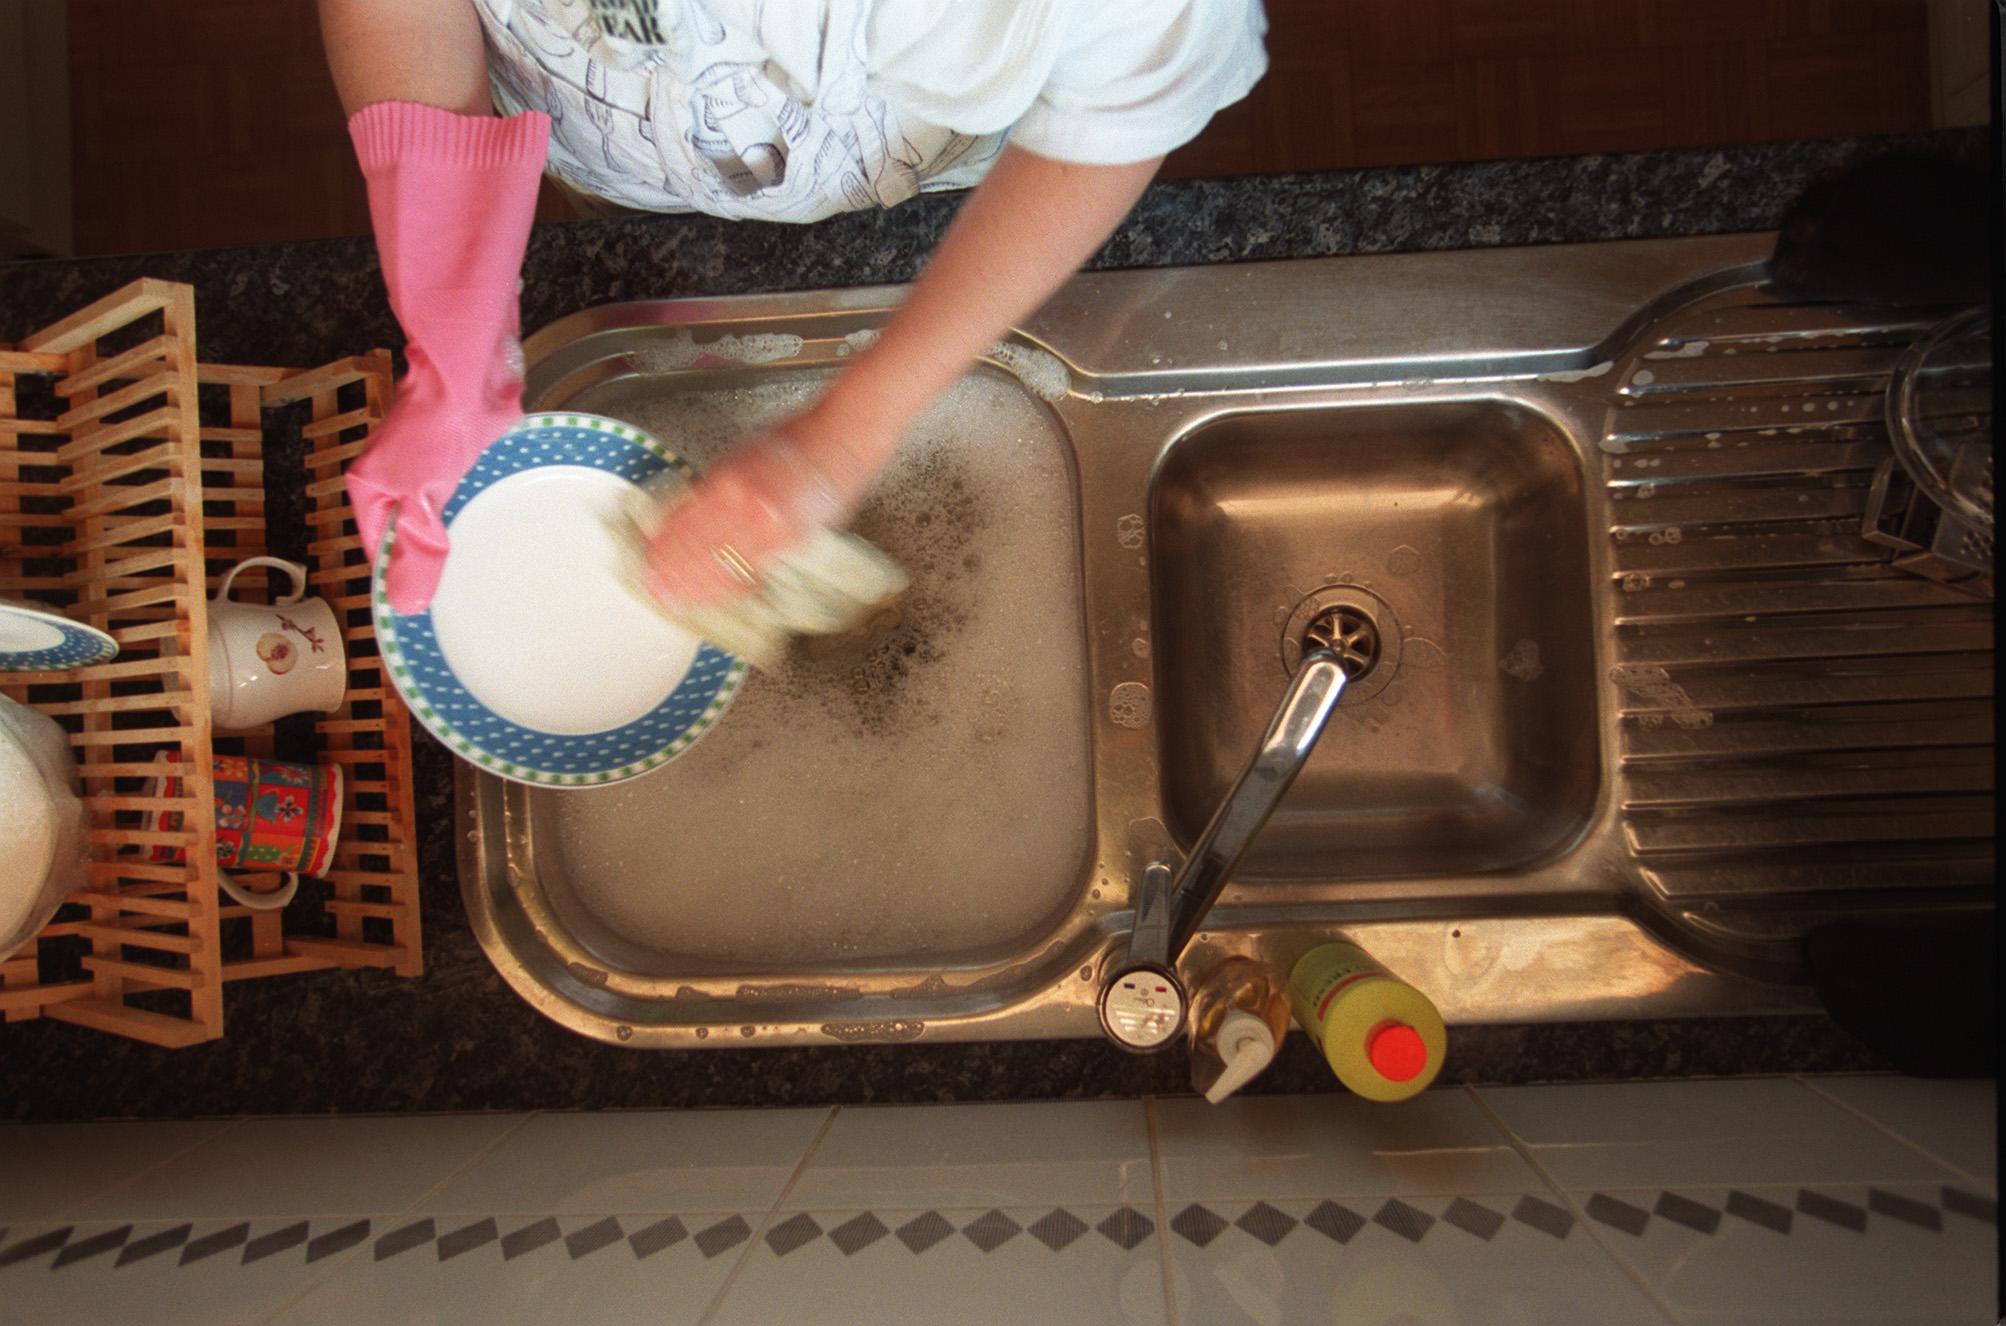 Une femme faisant la vaisselle | source : Getty Images